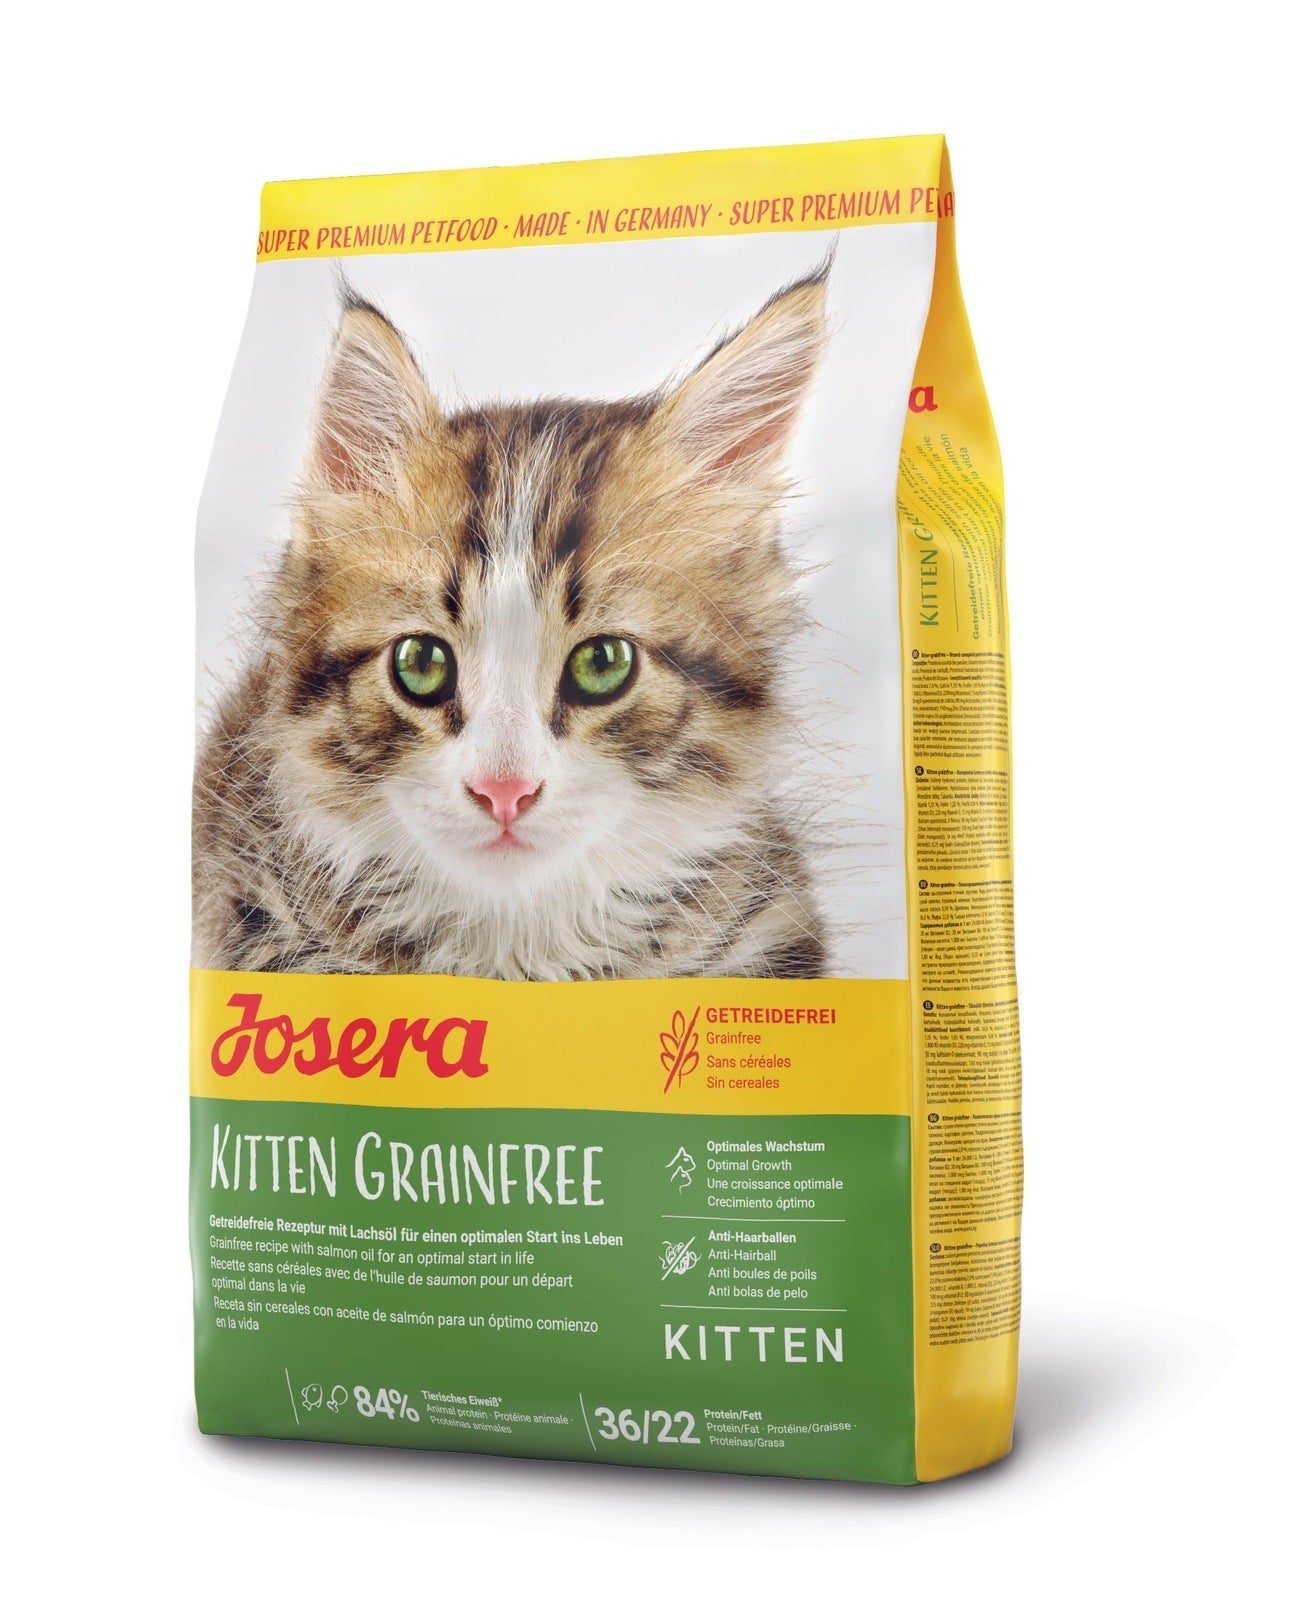 Artikel mit dem Namen Josera Kitten Grainfree im Shop von zoo.de , dem Onlineshop für nachhaltiges Hundefutter und Katzenfutter.